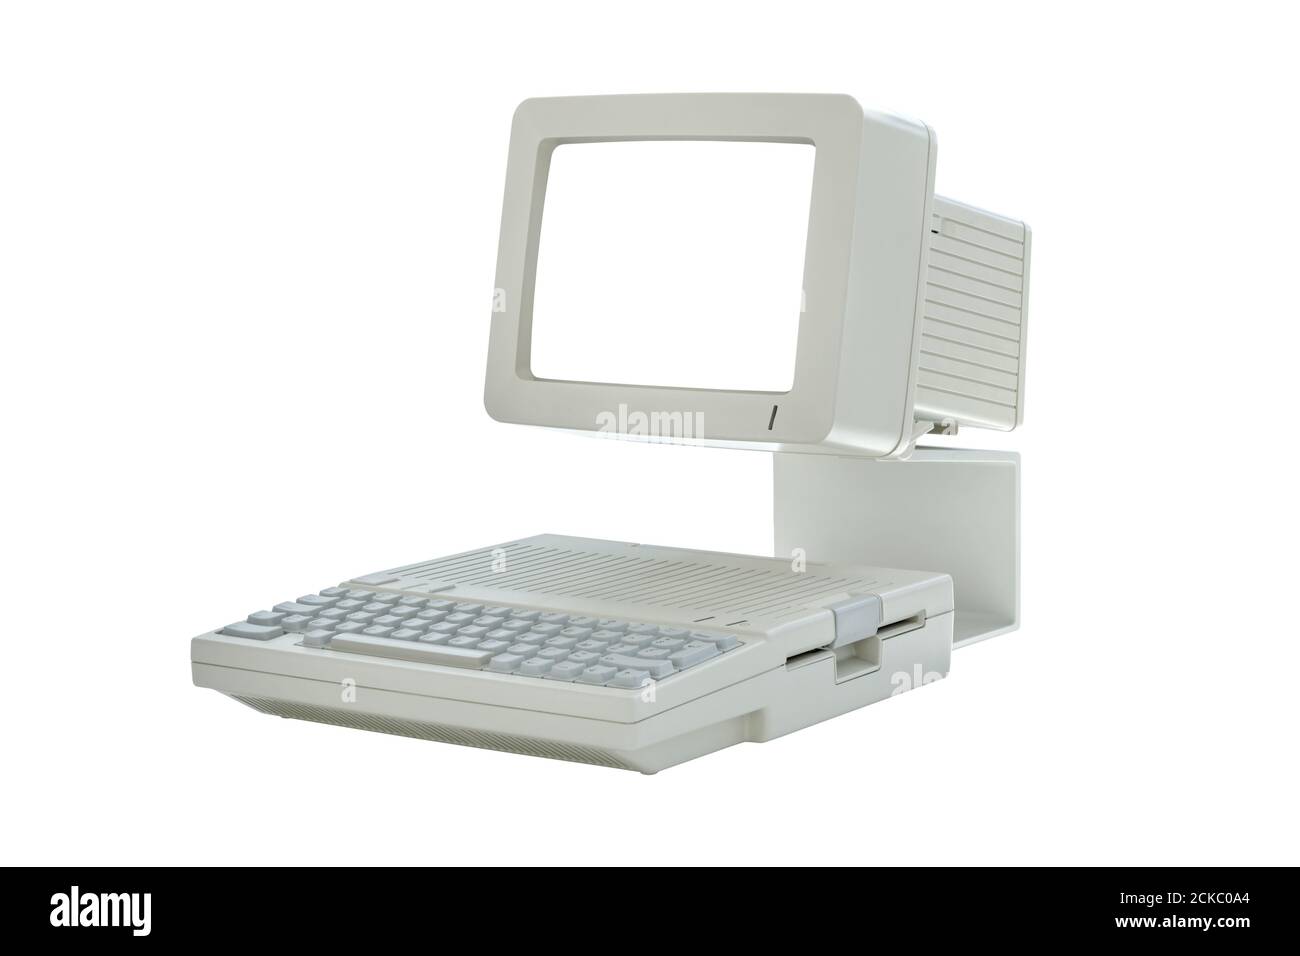 Ancien ordinateur de bureau vintage des années 80 avec écran vierge isolé sur fond blanc. Vue latérale d'un PC classique rétro Banque D'Images